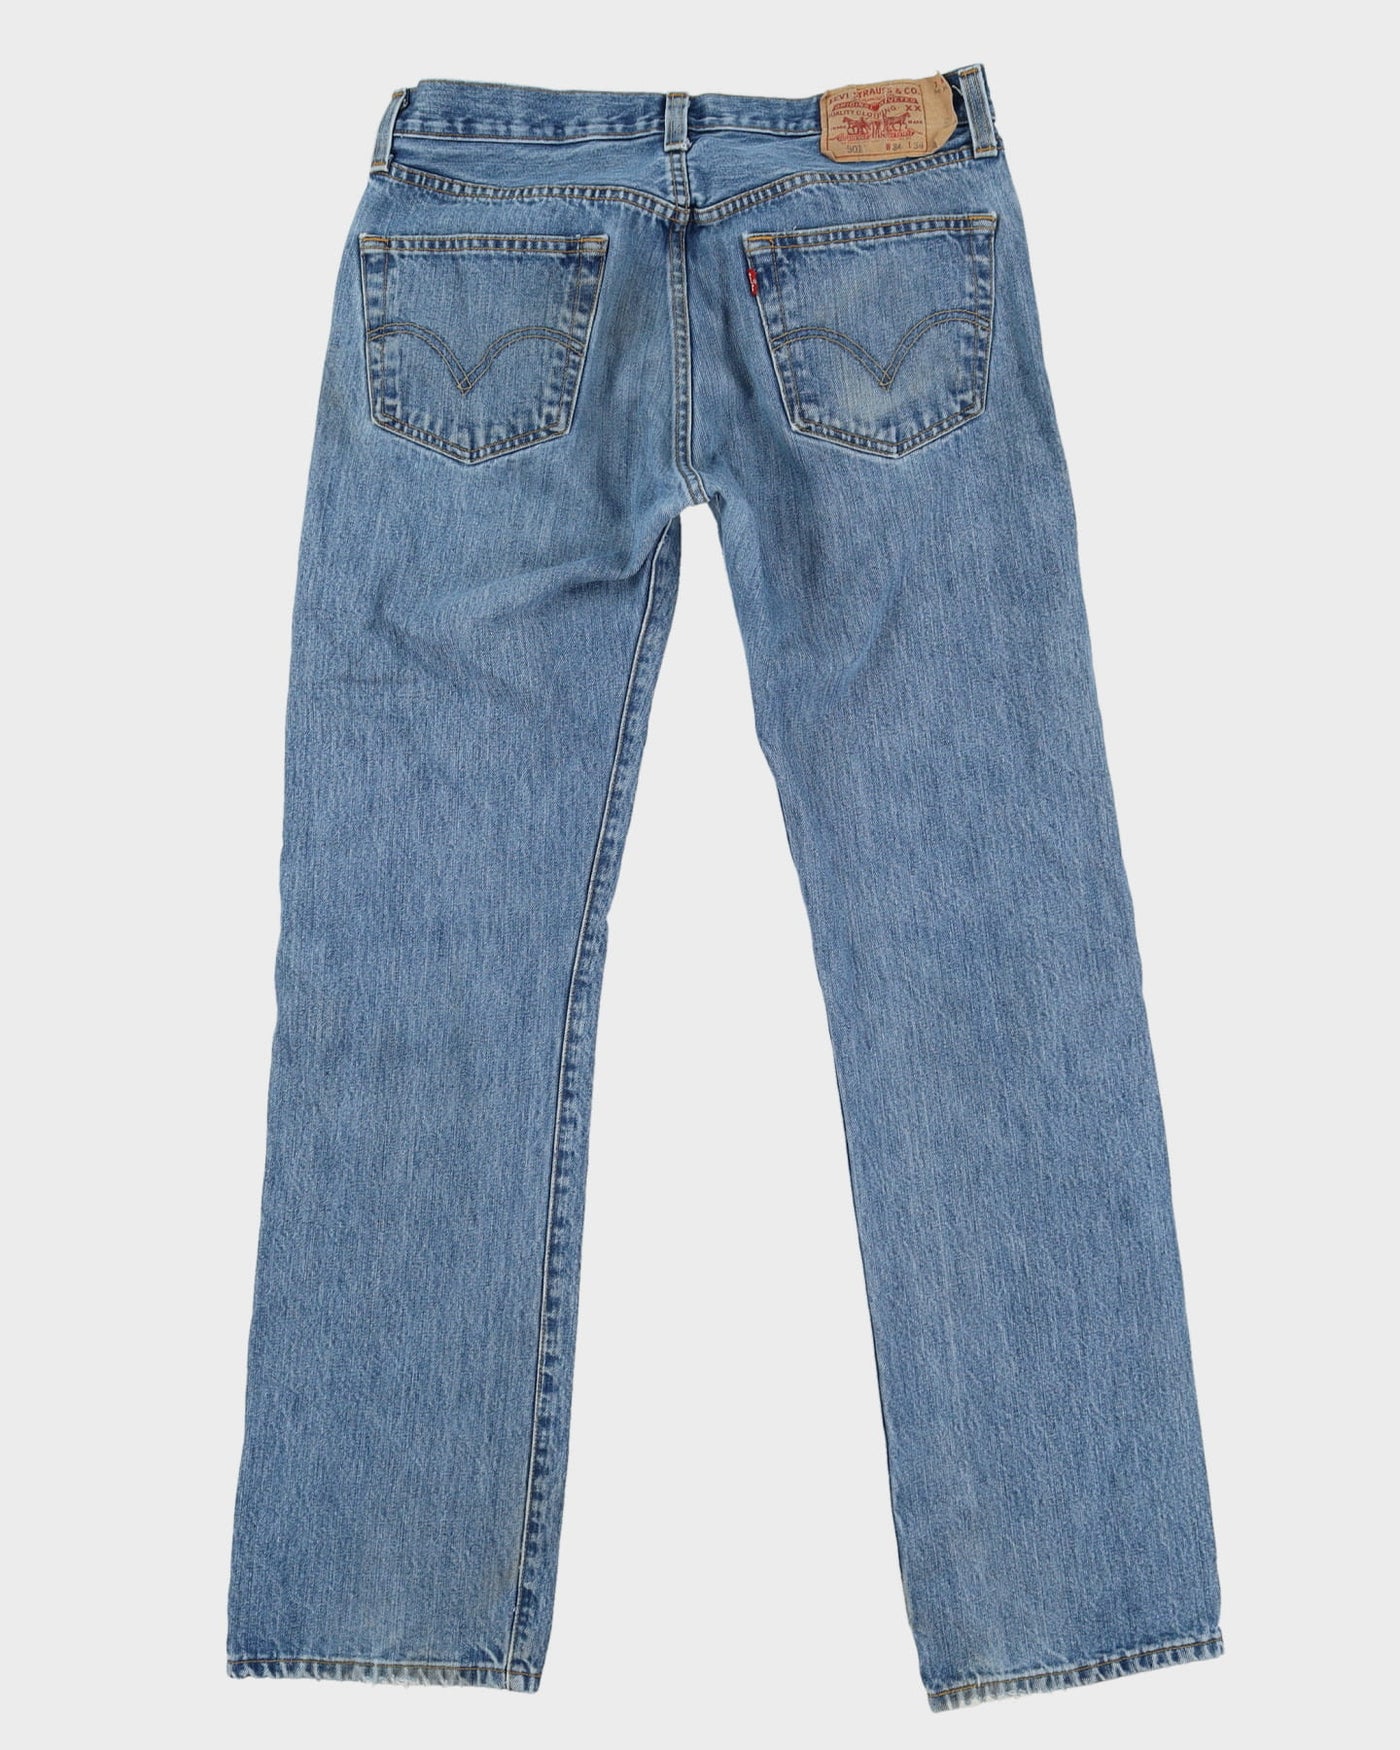 Levi's 501 Blue Light Wash Jeans - W34 L34